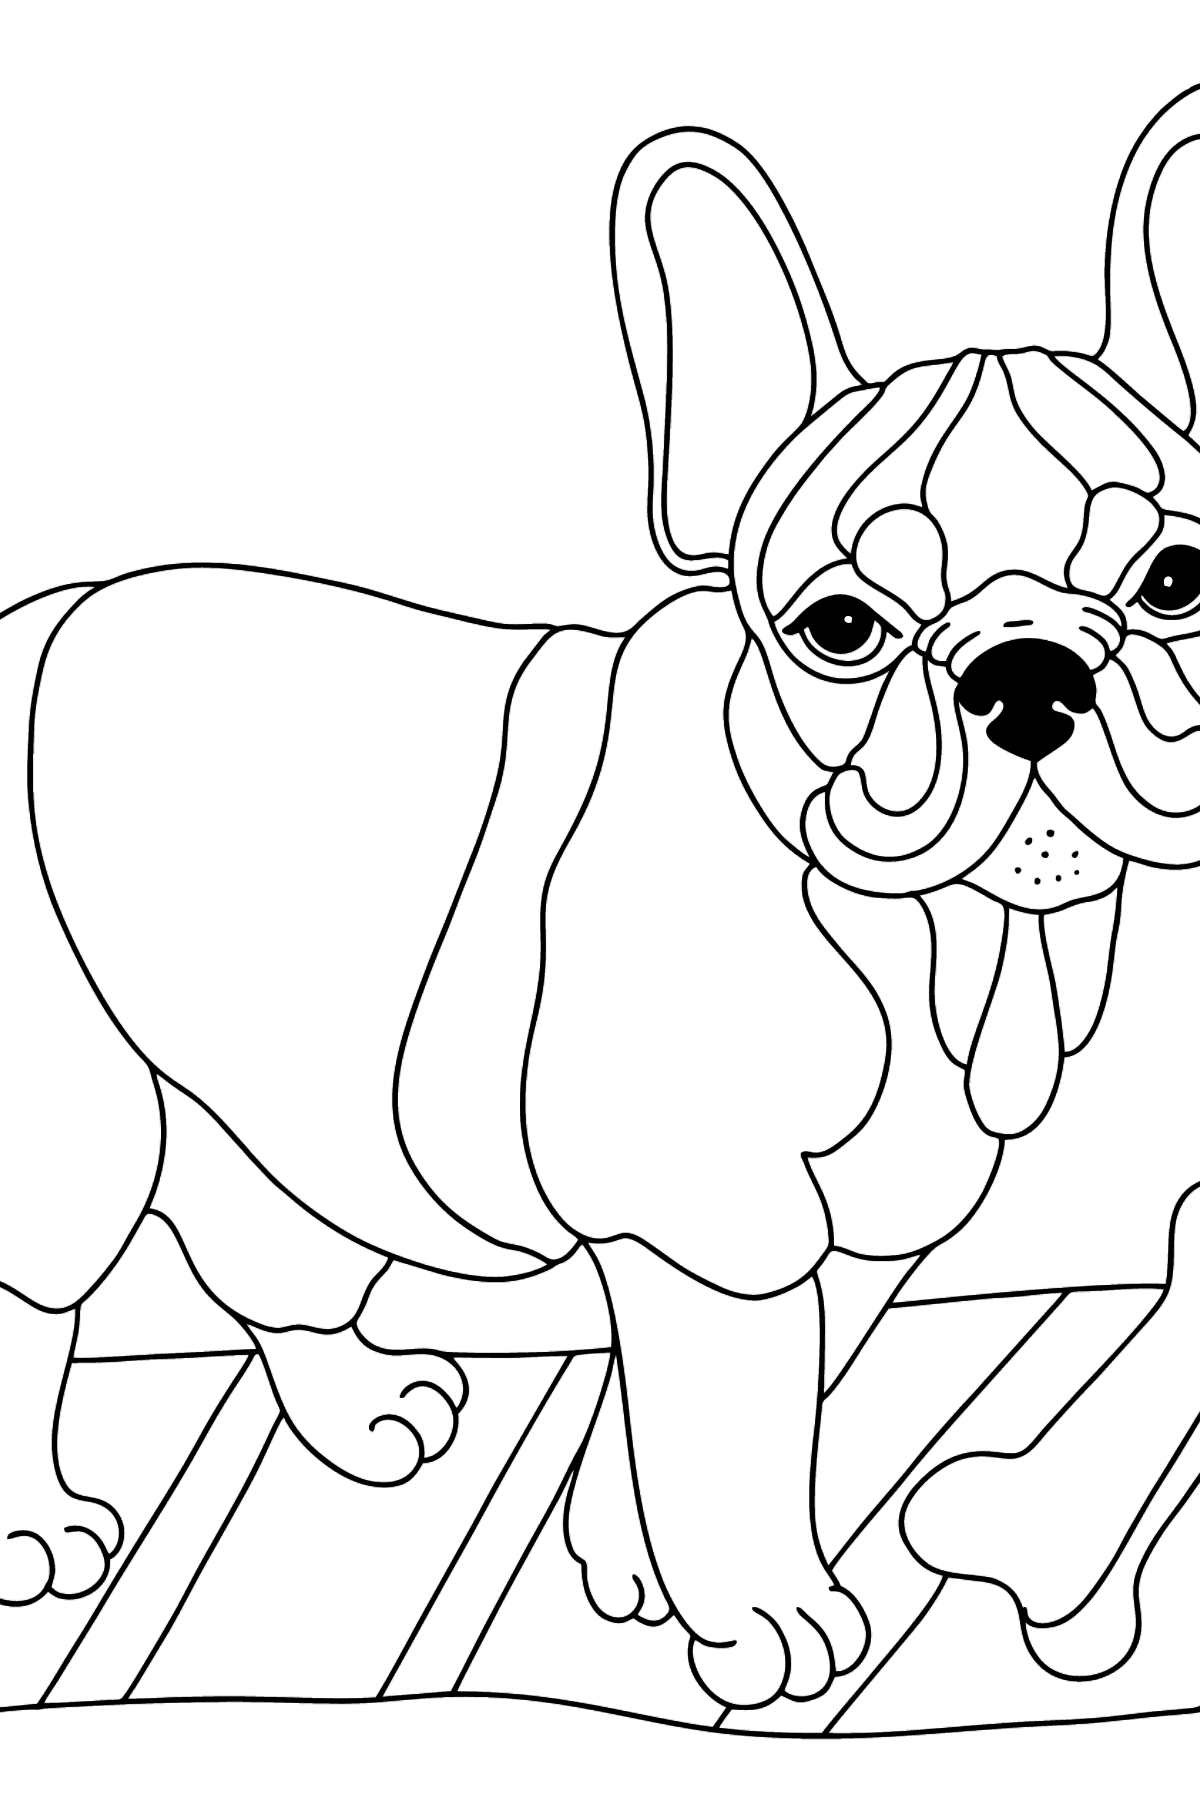 Tegning til fargelegging fransk bulldog (vanskelig) - Tegninger til fargelegging for barn